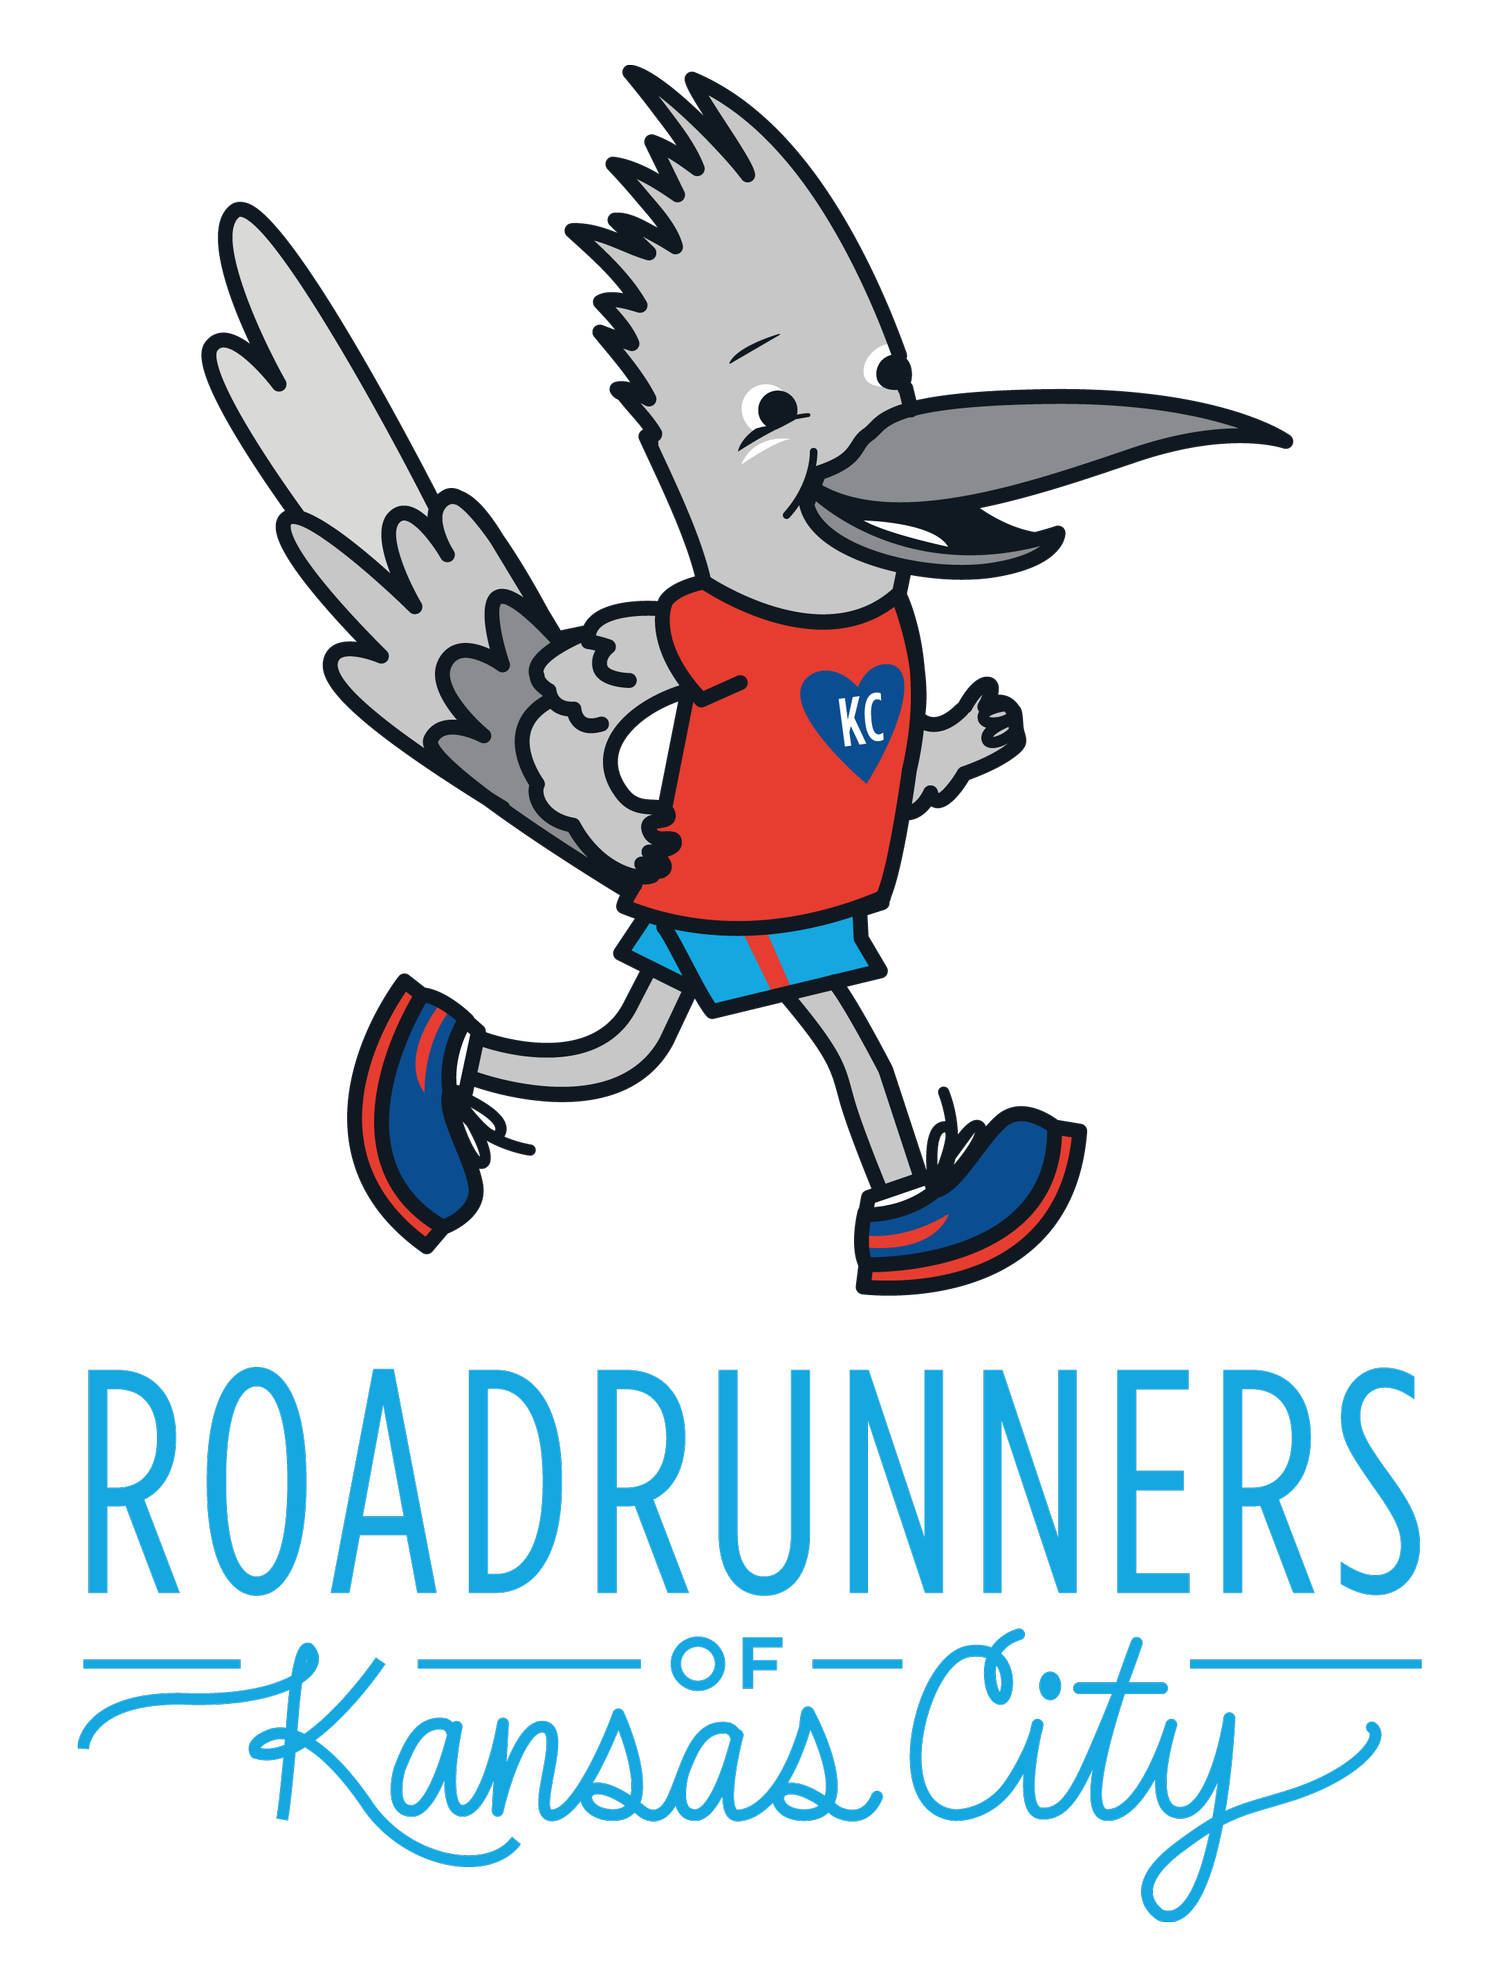 Roadrunners of Kansas City